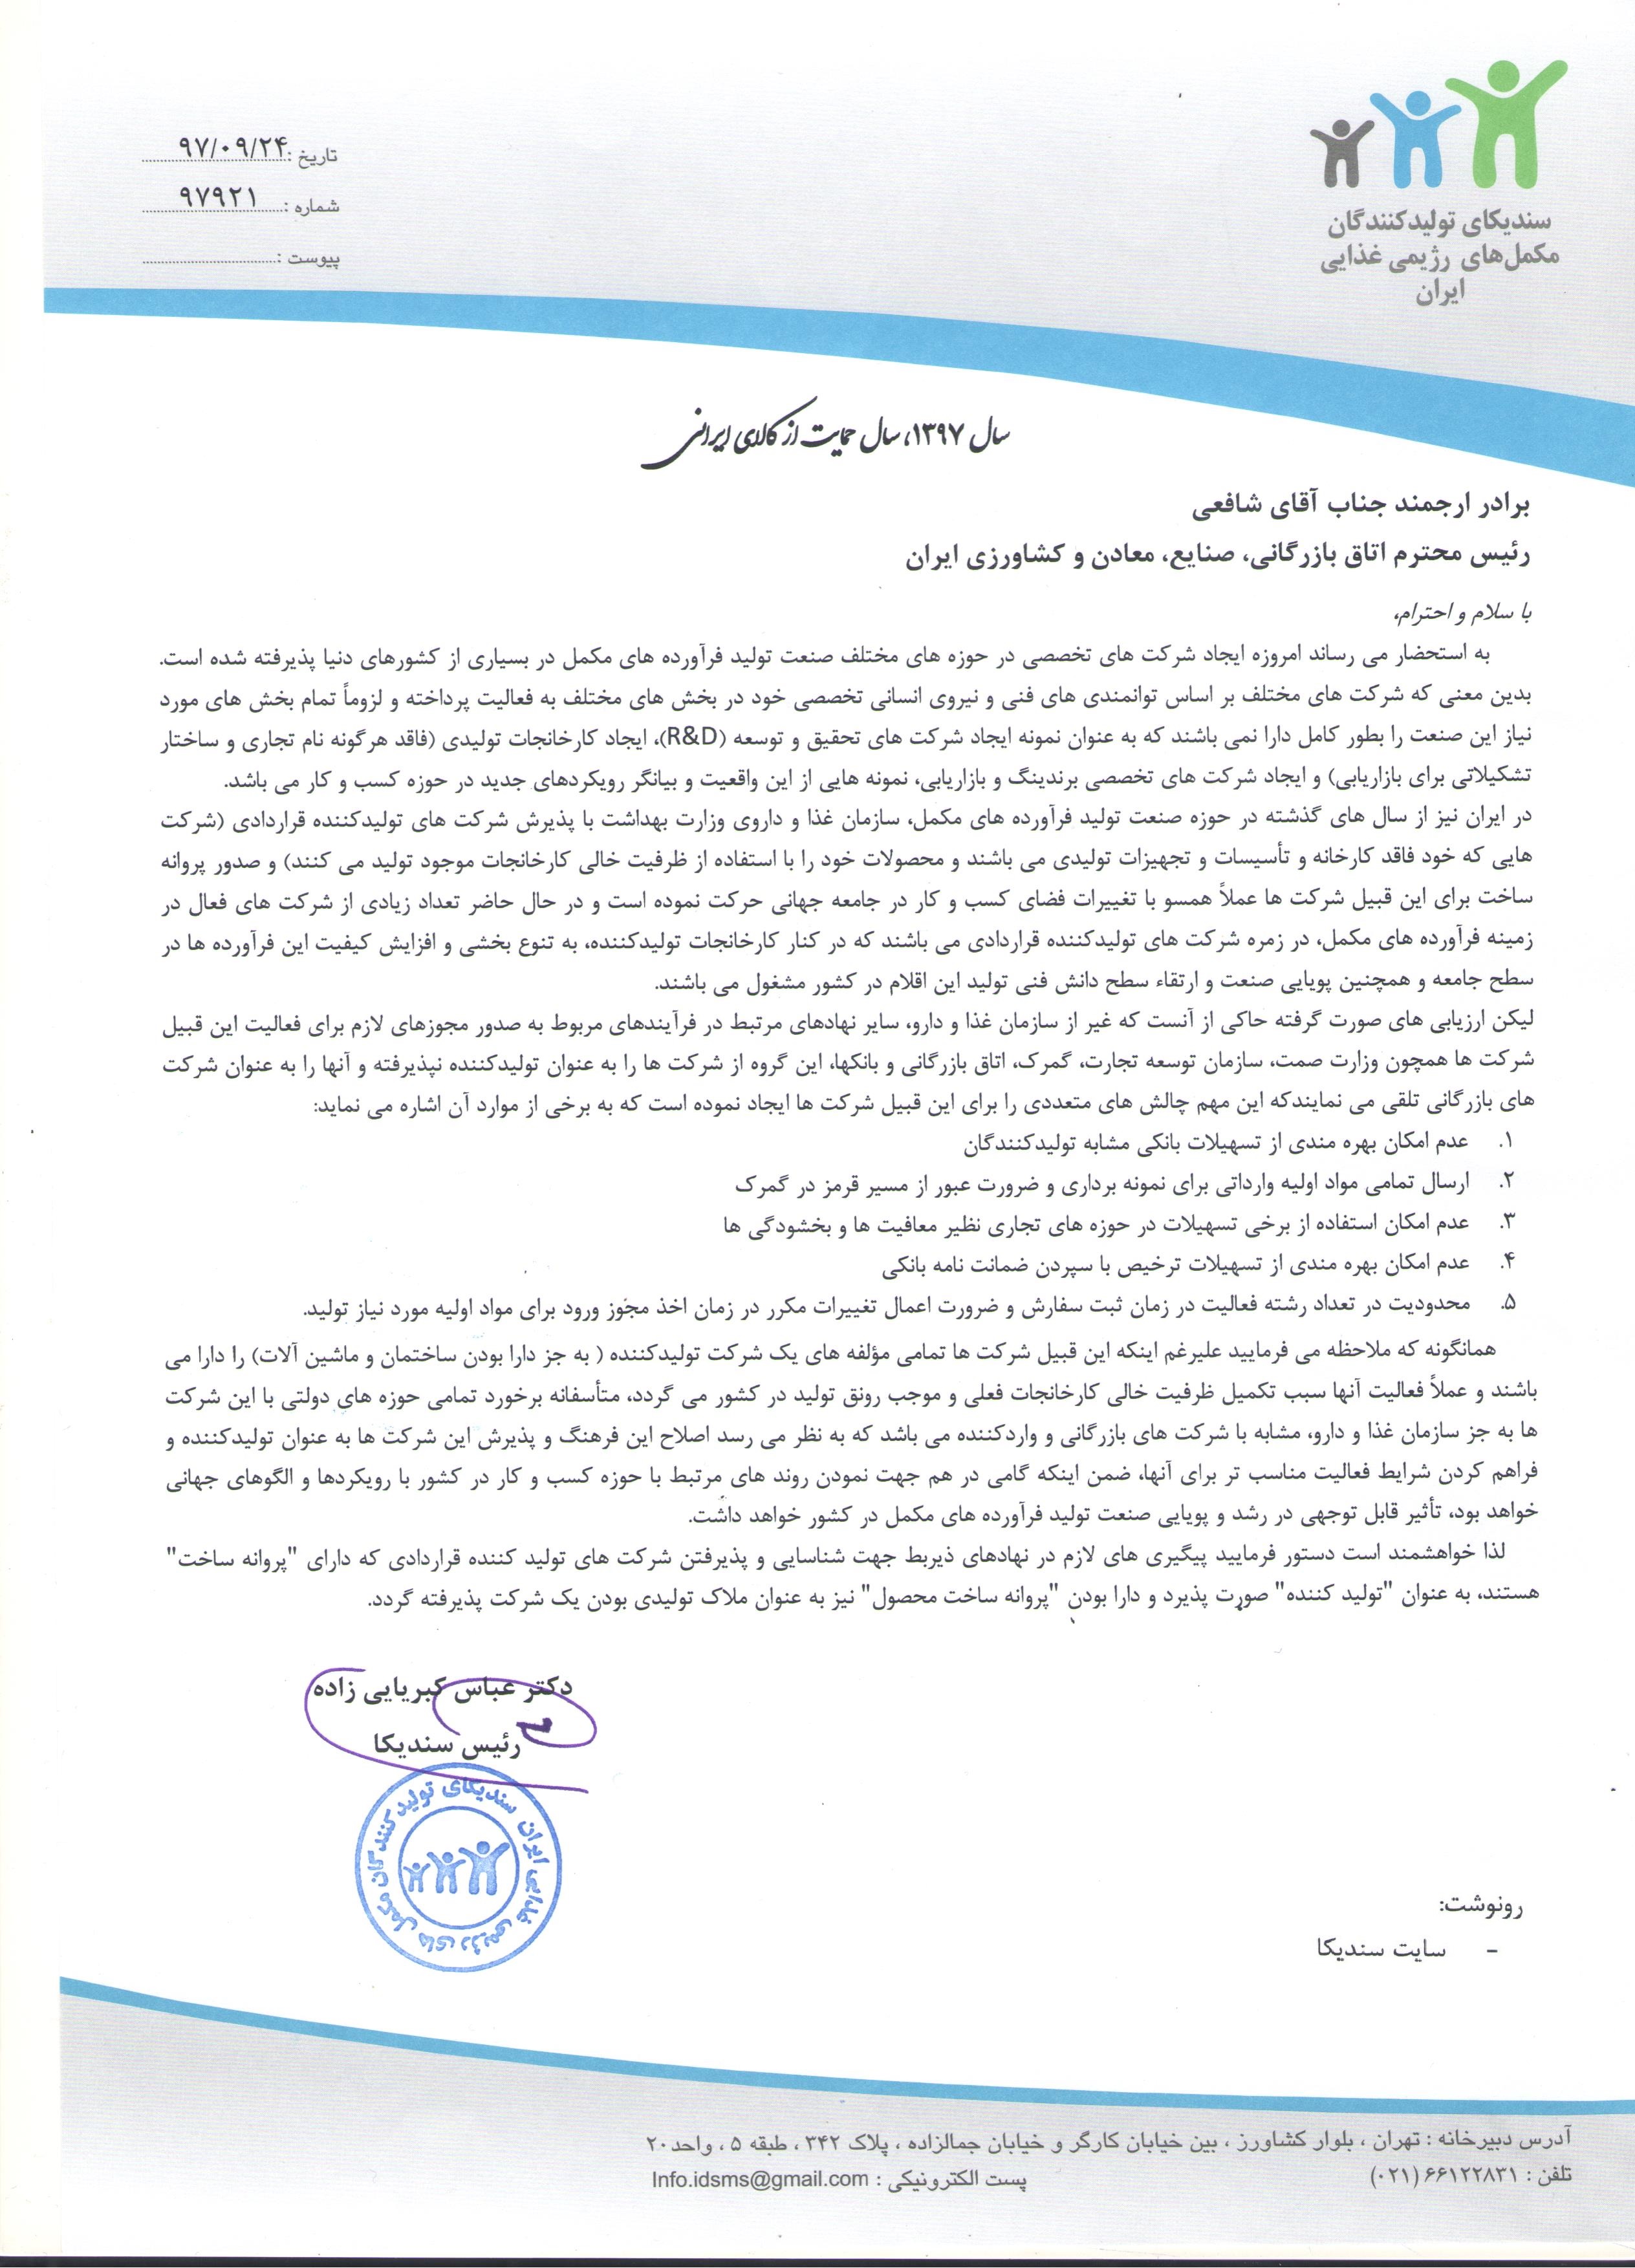 نامه در خصوص شرکت های دارای تولید قراردادی به اتاق بازرگانی ایران